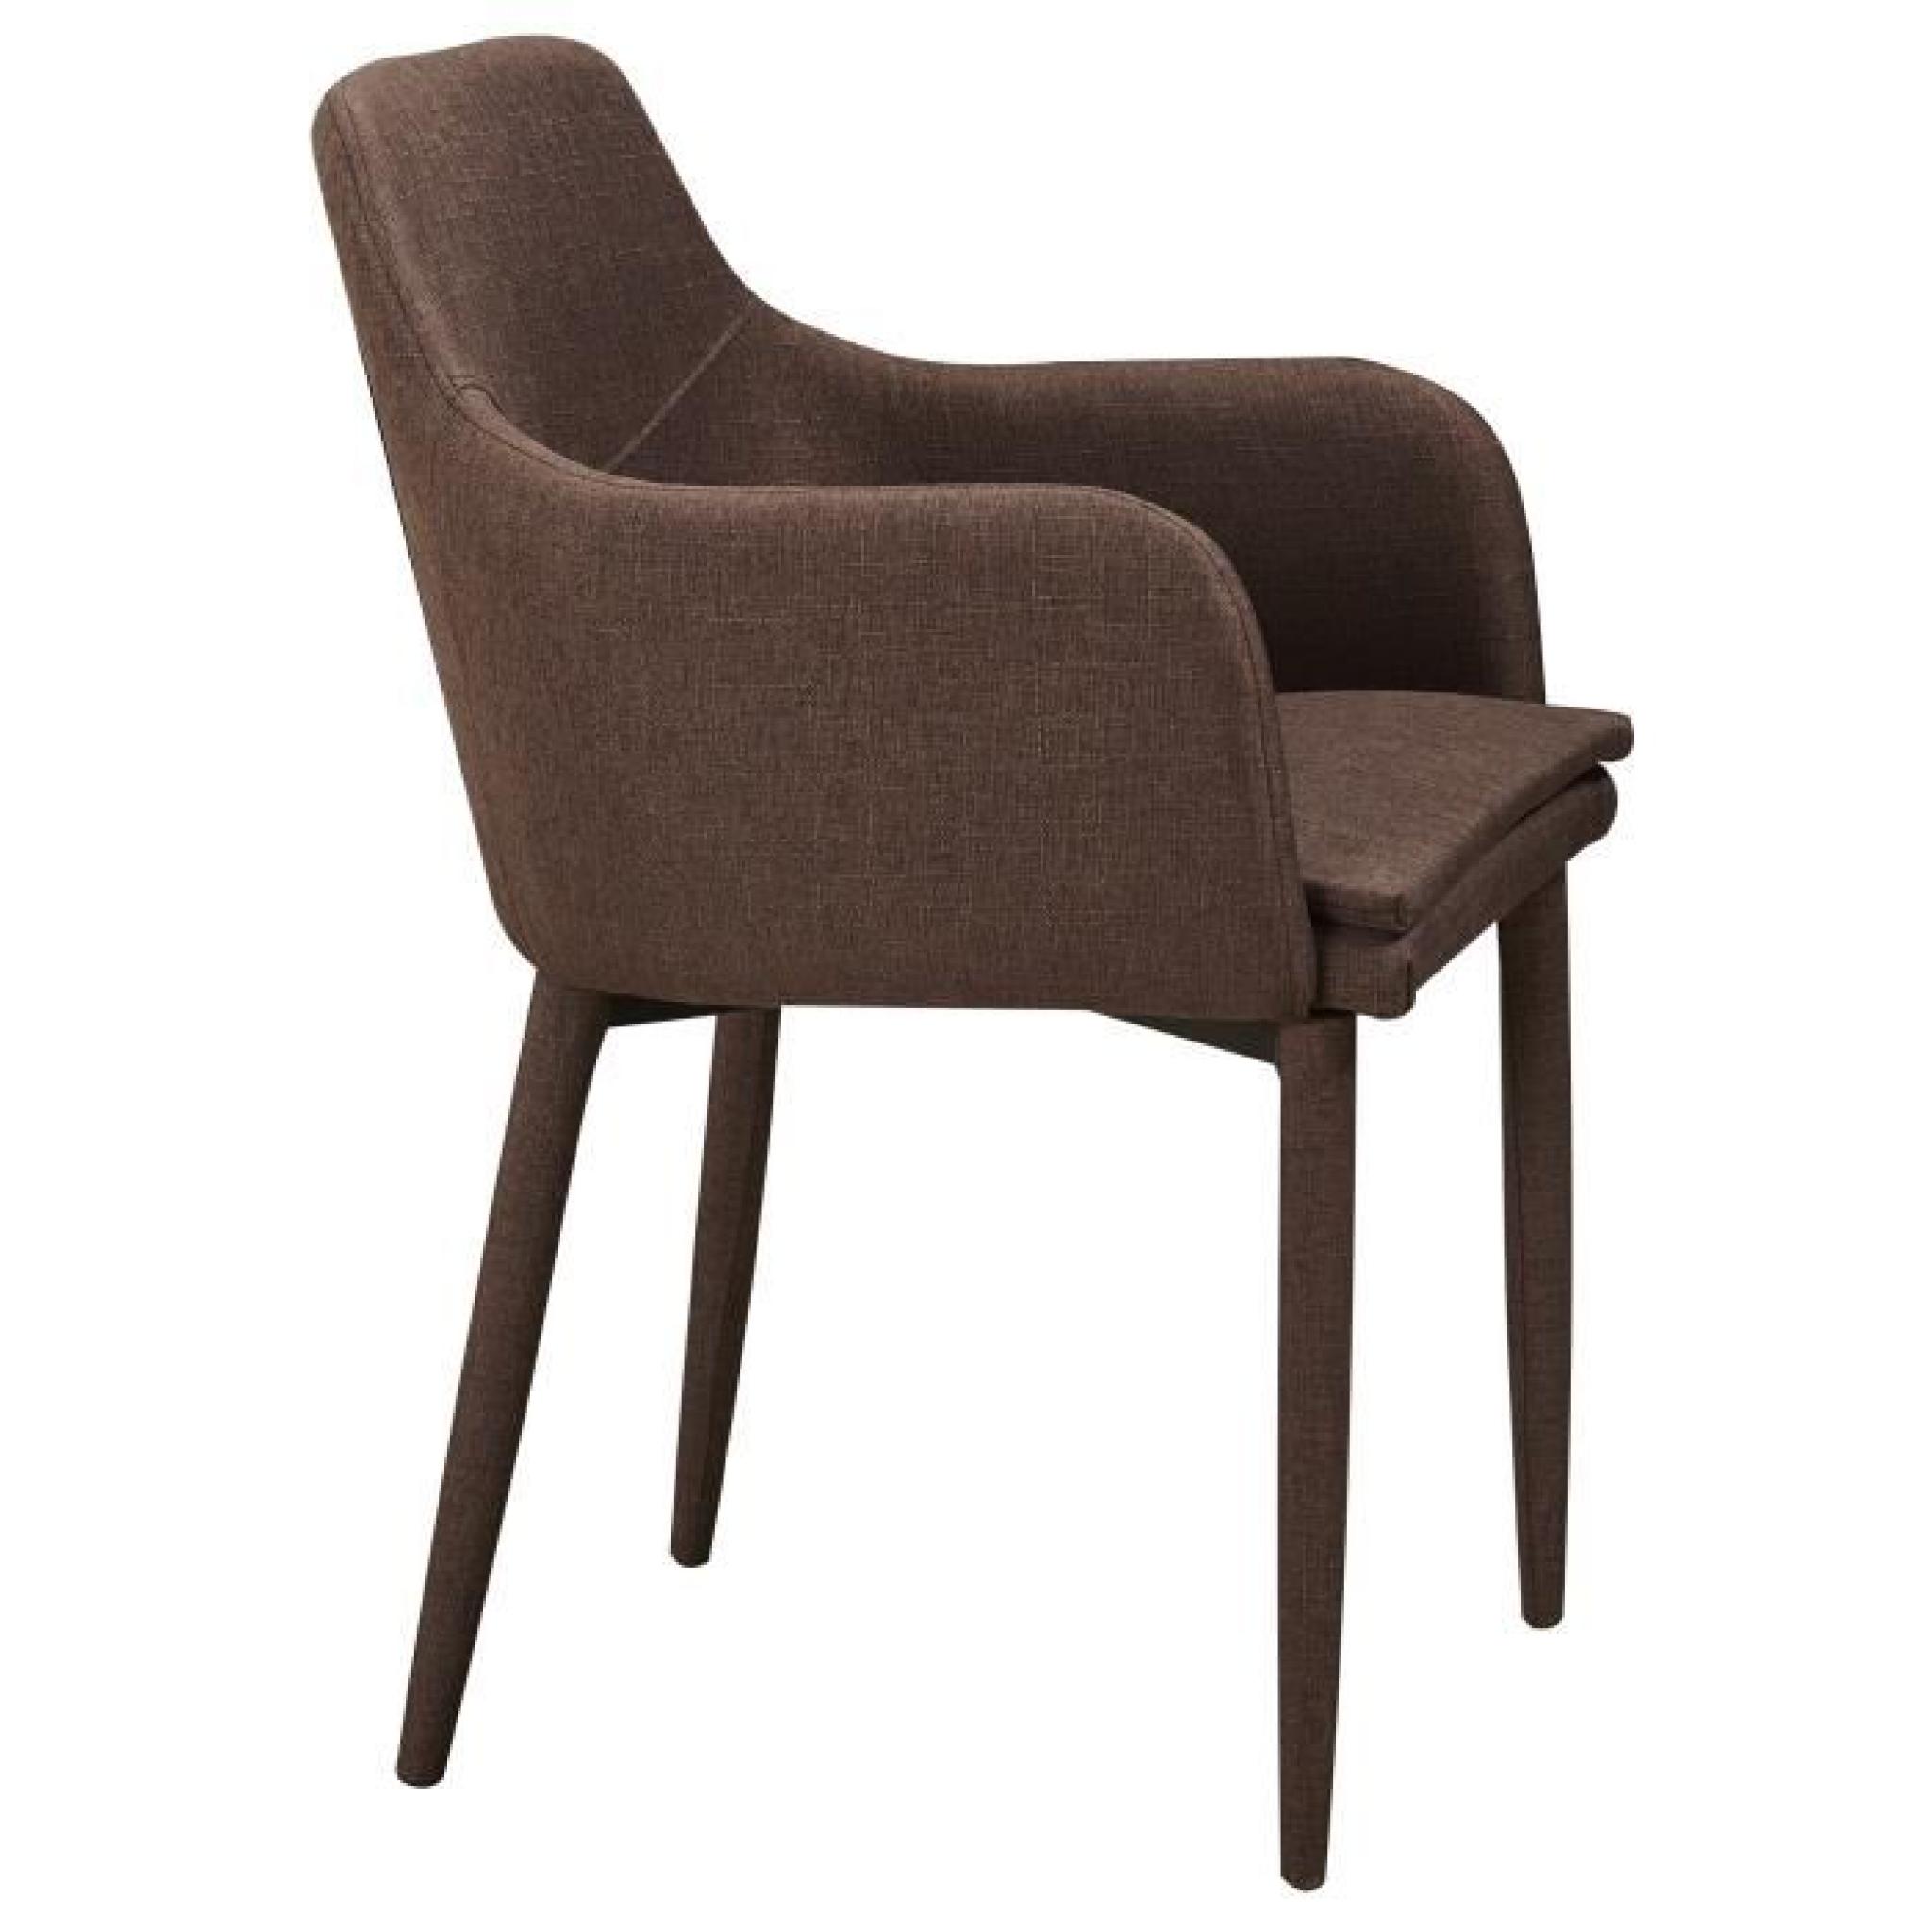 Chaise en tissus design avec accoudoirs coloris chocolat pas cher